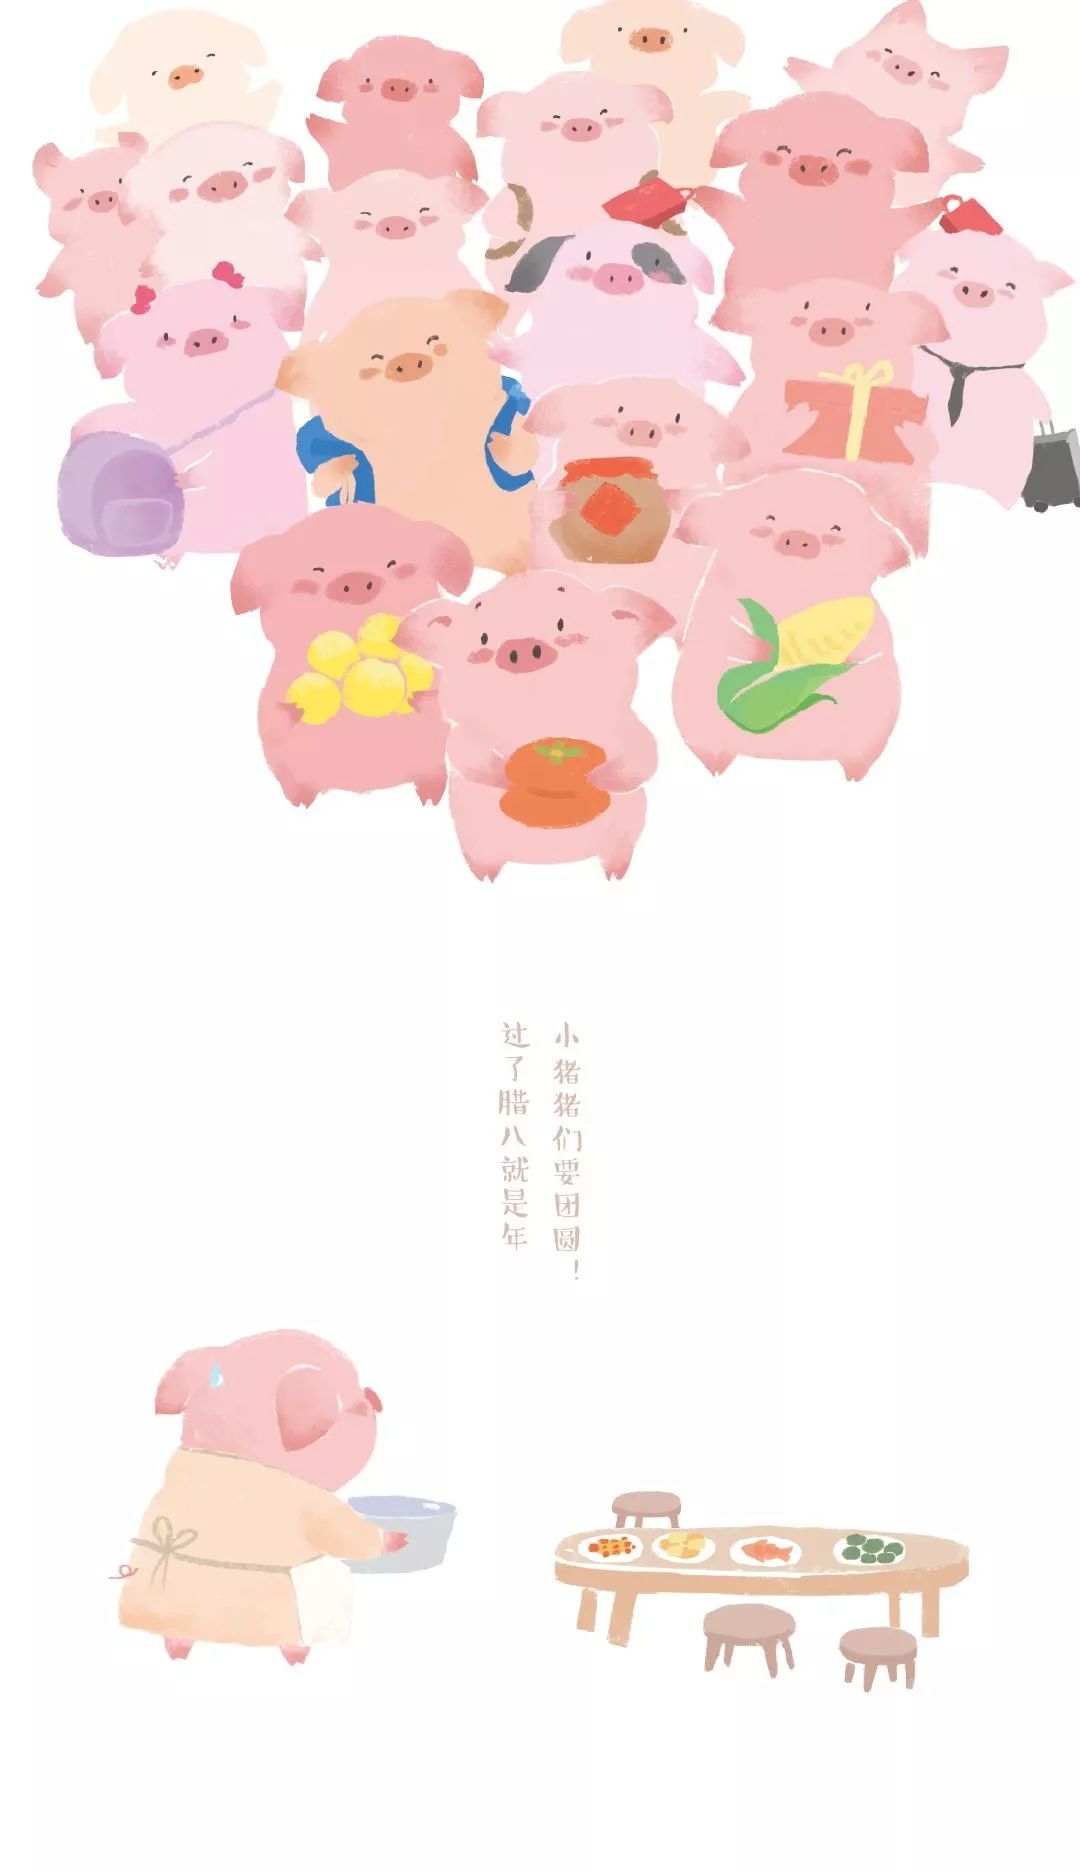 壁纸 | 2019年猪猪壁纸来啦，请查收!